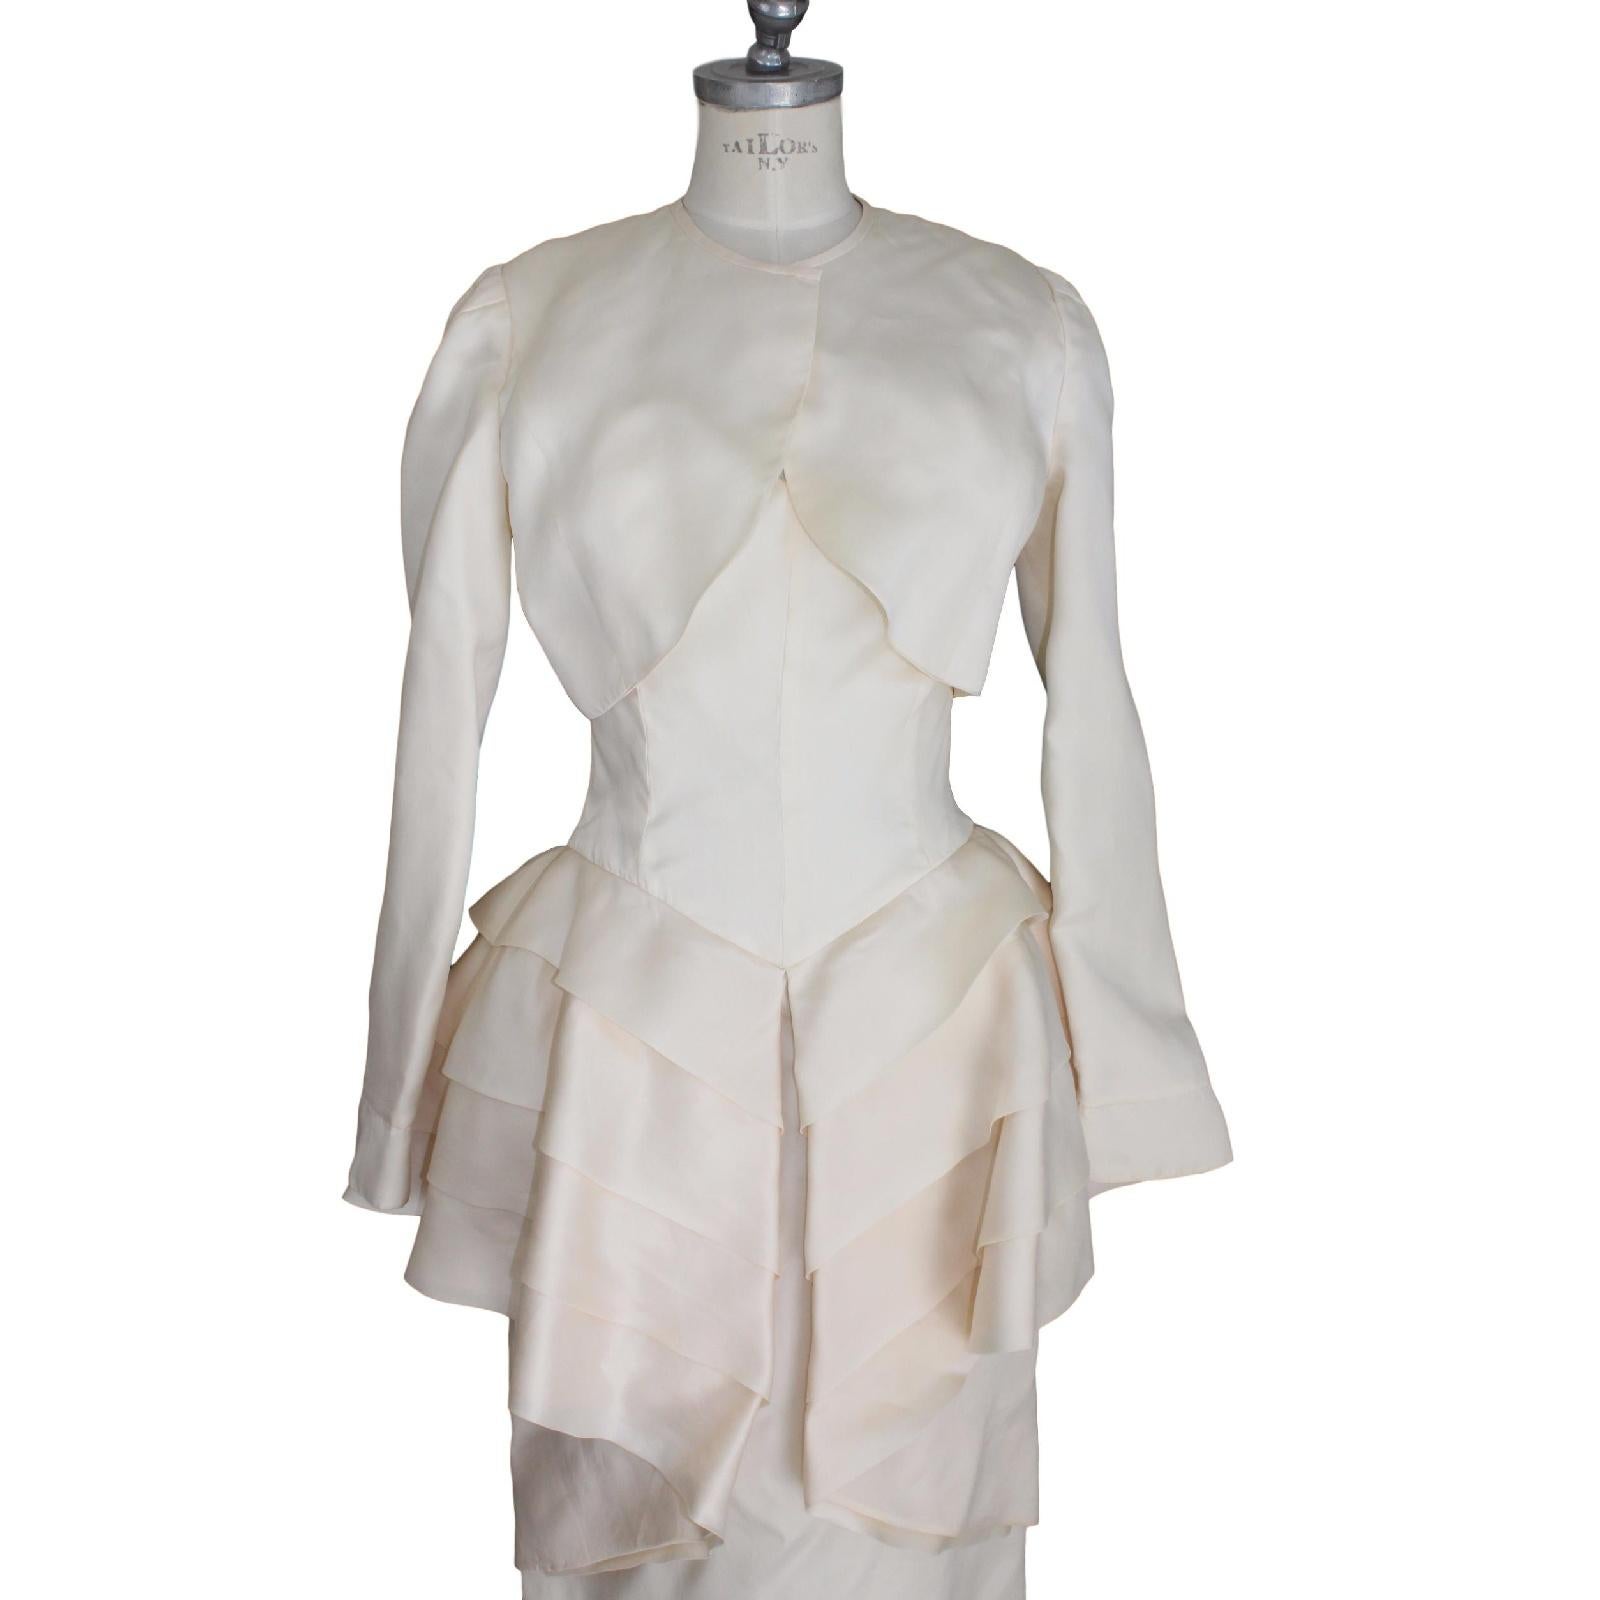 Beigefarbenes Vintage-Hochzeitskleid aus Seide mit drei Sprüngen in der Taille, gepolstert und mit langärmeligem Bolero-Jäckchen.

Die Hochzeitskleider, die für Modeschauen verwendet wurden, sind in gutem Zustand und müssen gewaschen